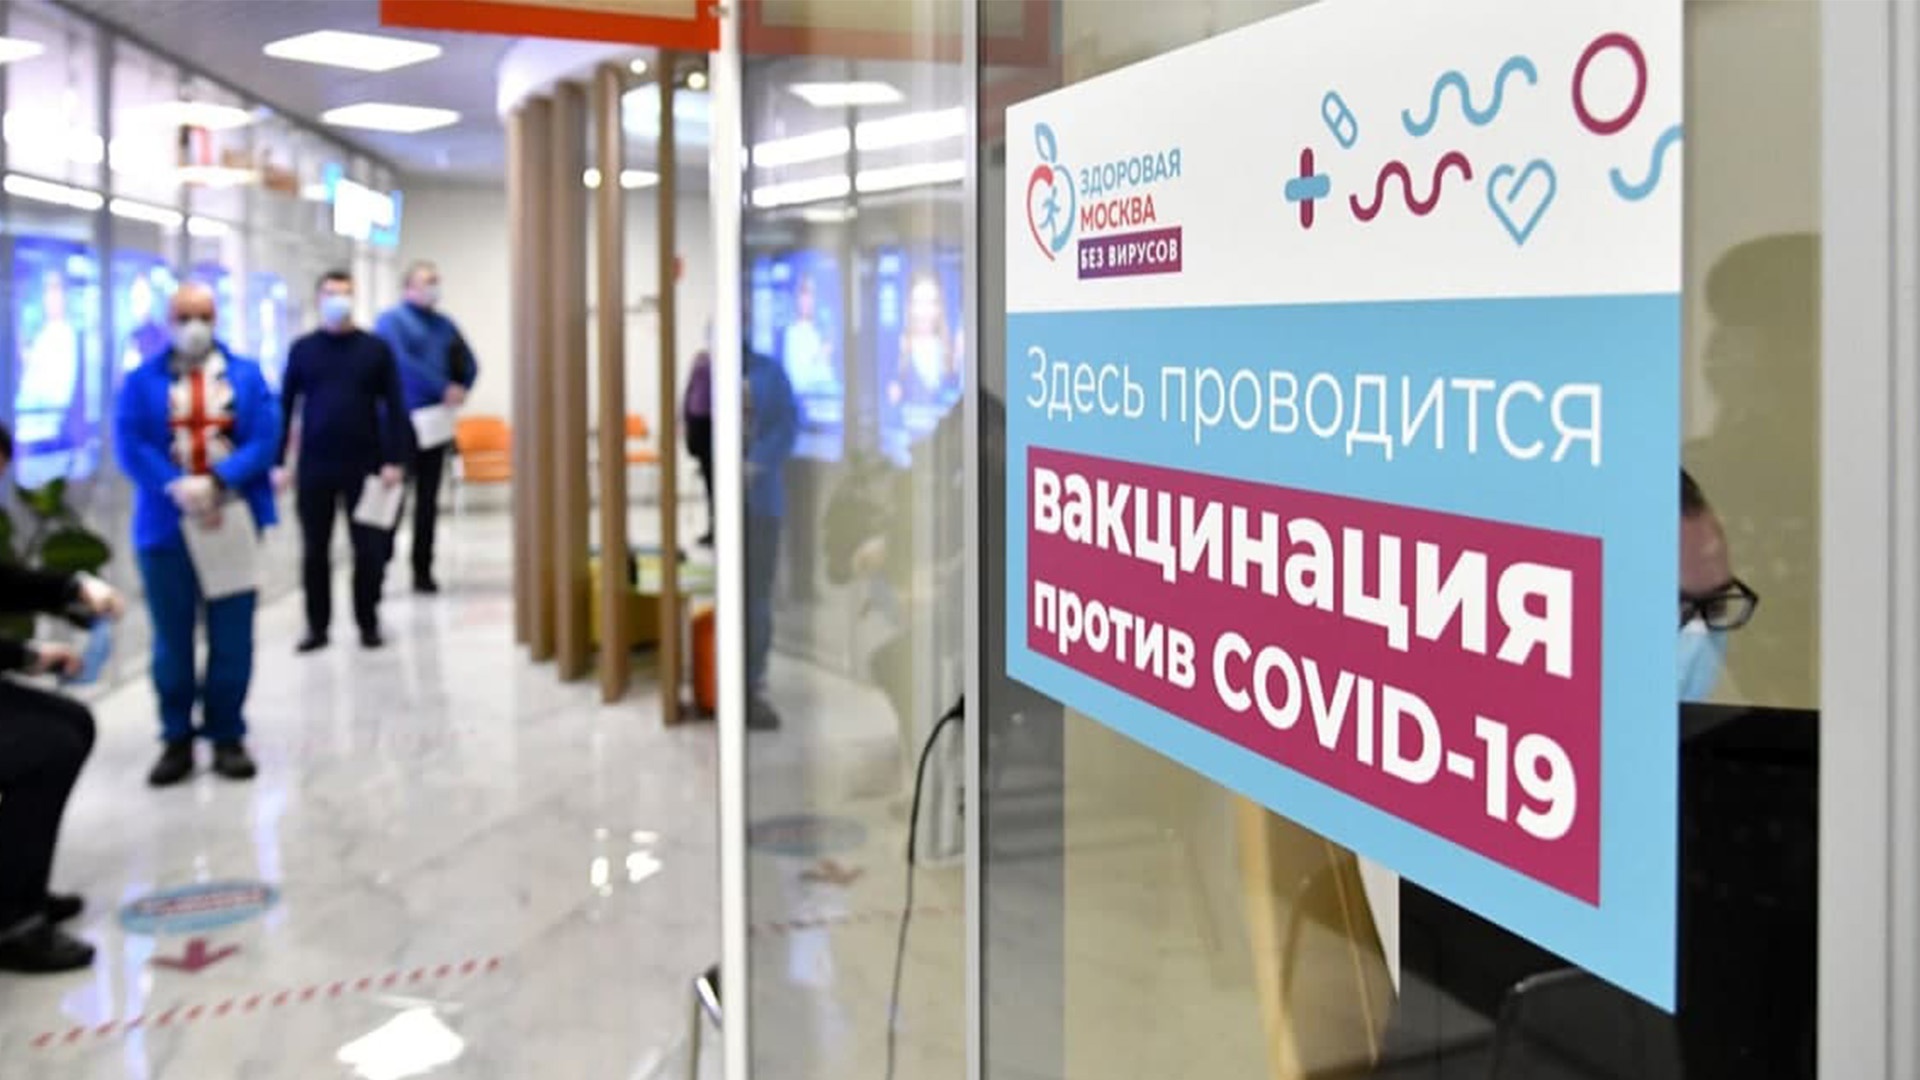 В Москве началась вакцинация трудовых мигрантов